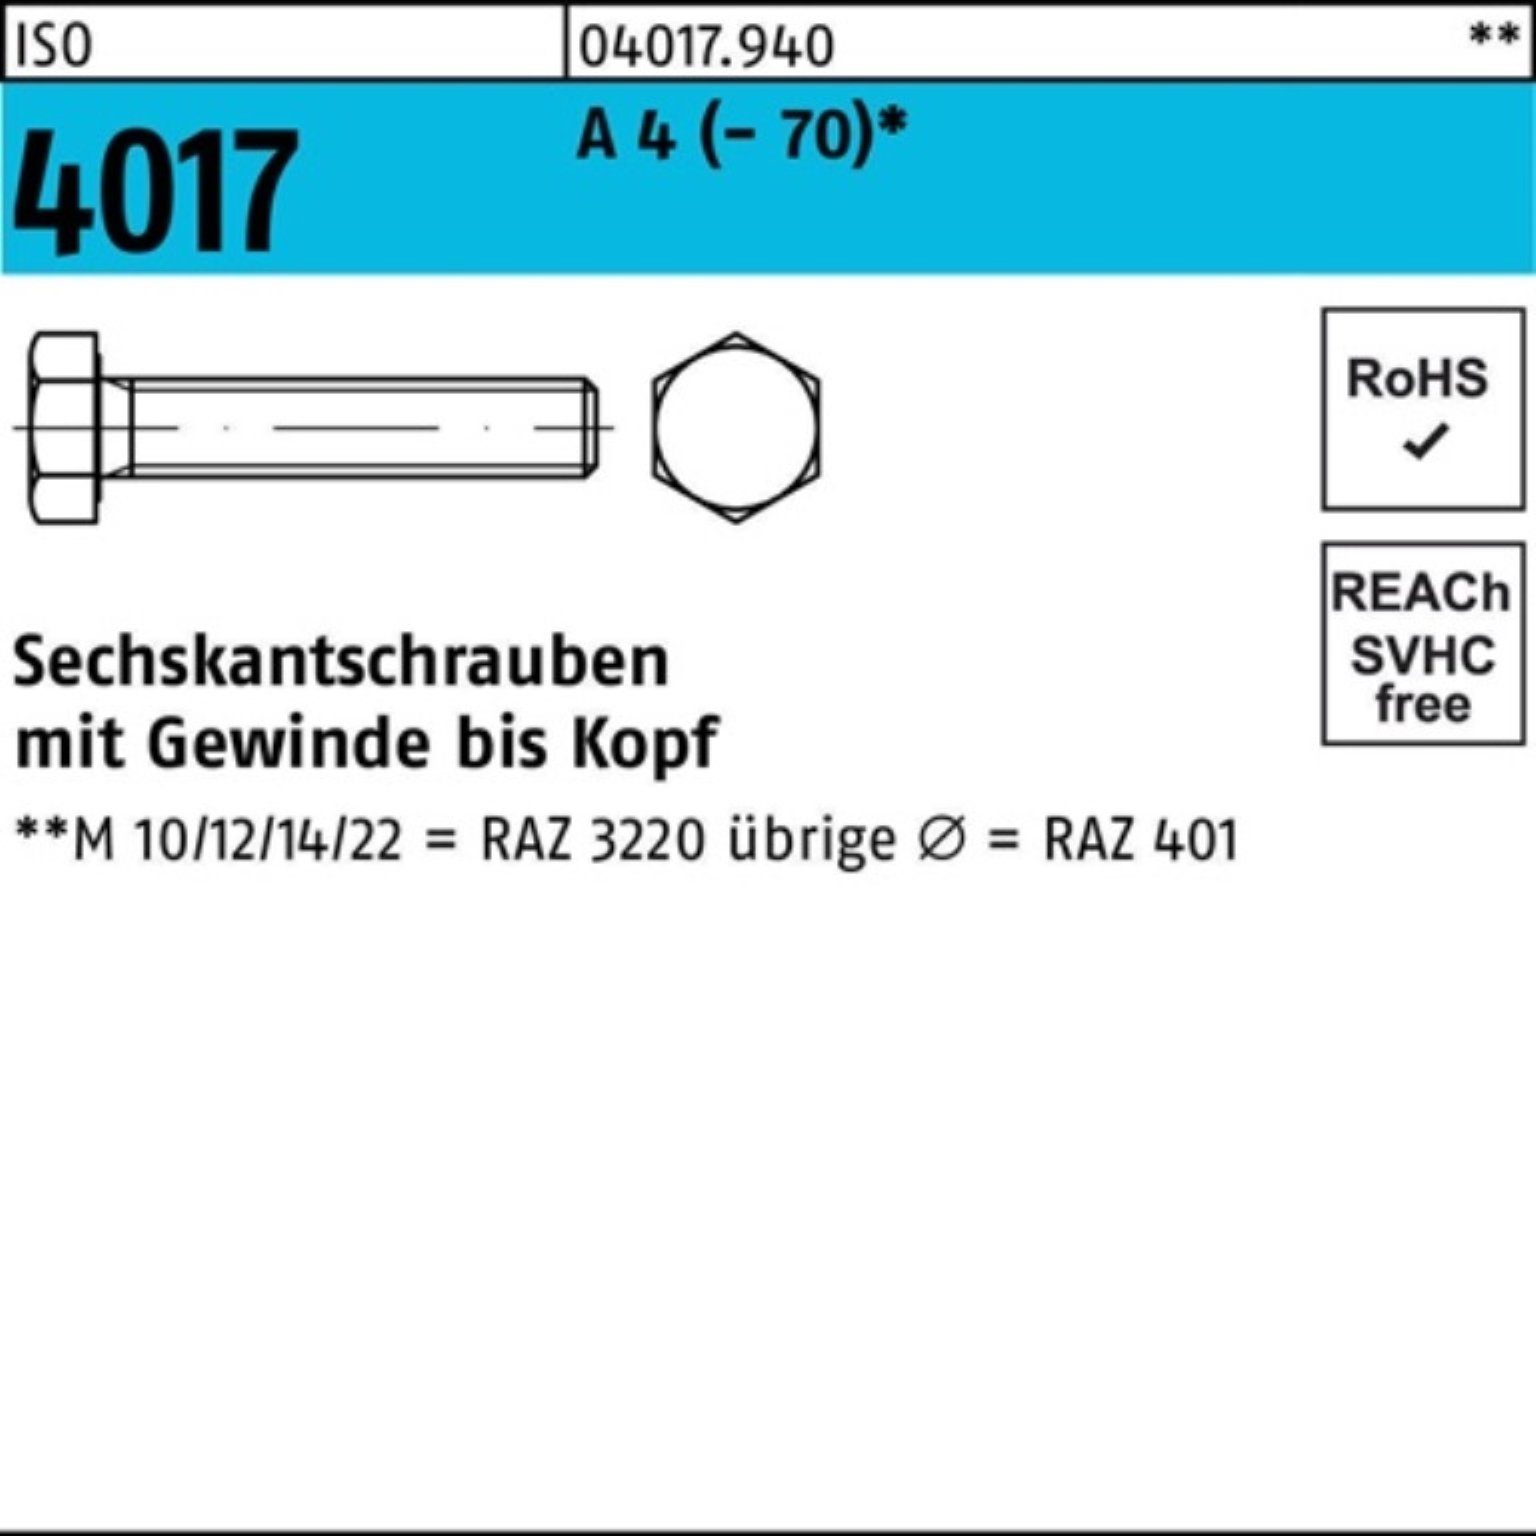 Bufab Sechskantschraube 100er Pack Sechskantschraube ISO 4017 VG M27x 65 A 4 (70) 1 Stück I